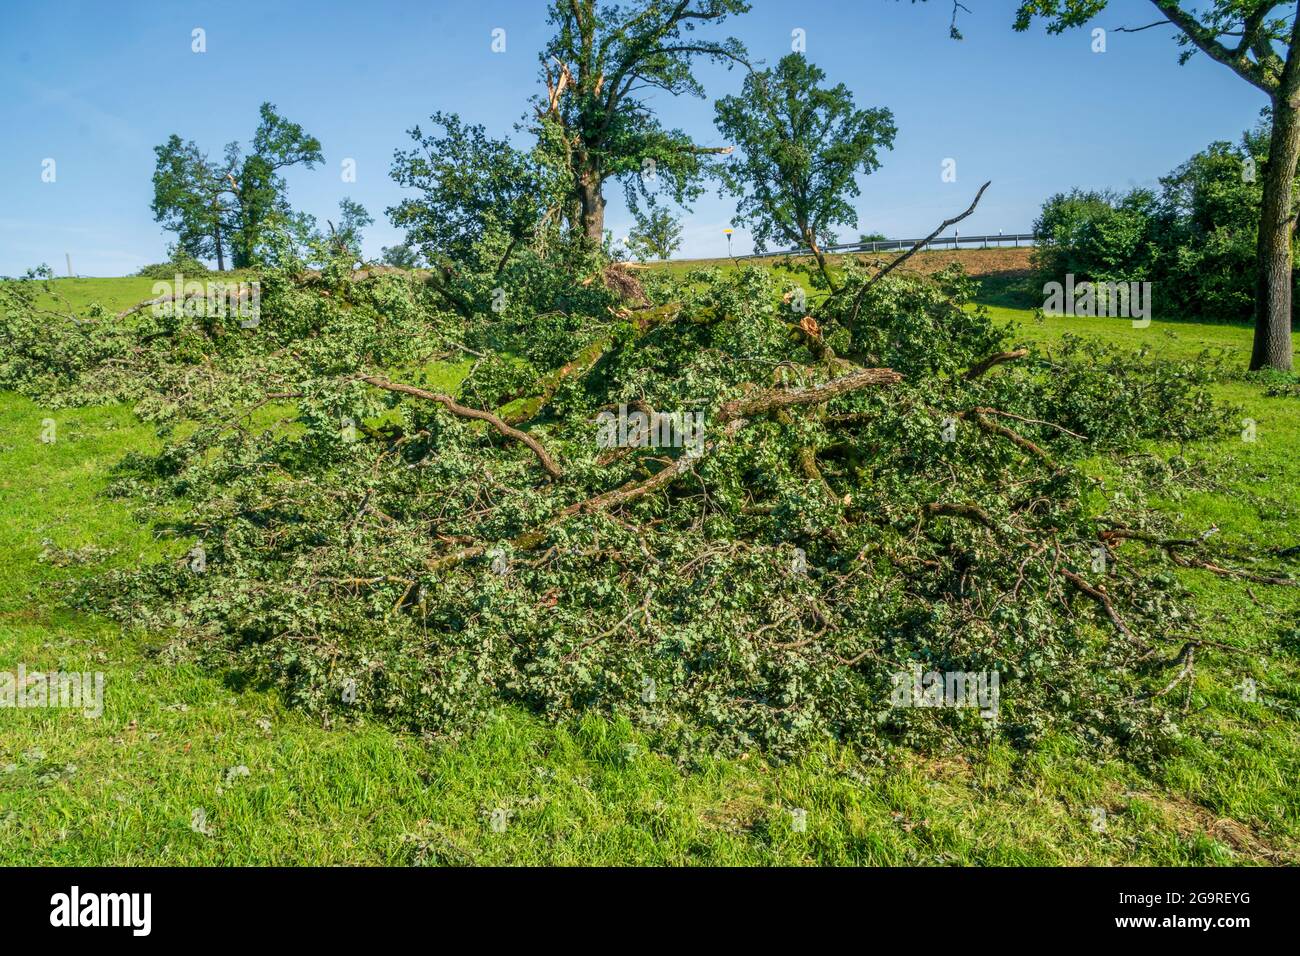 Hagelschaden und Starkregen zerstört Landwirtschaft in Bayern nördlich von Murnau, abgebrochene und entwurzelte Bäume Stock Photo